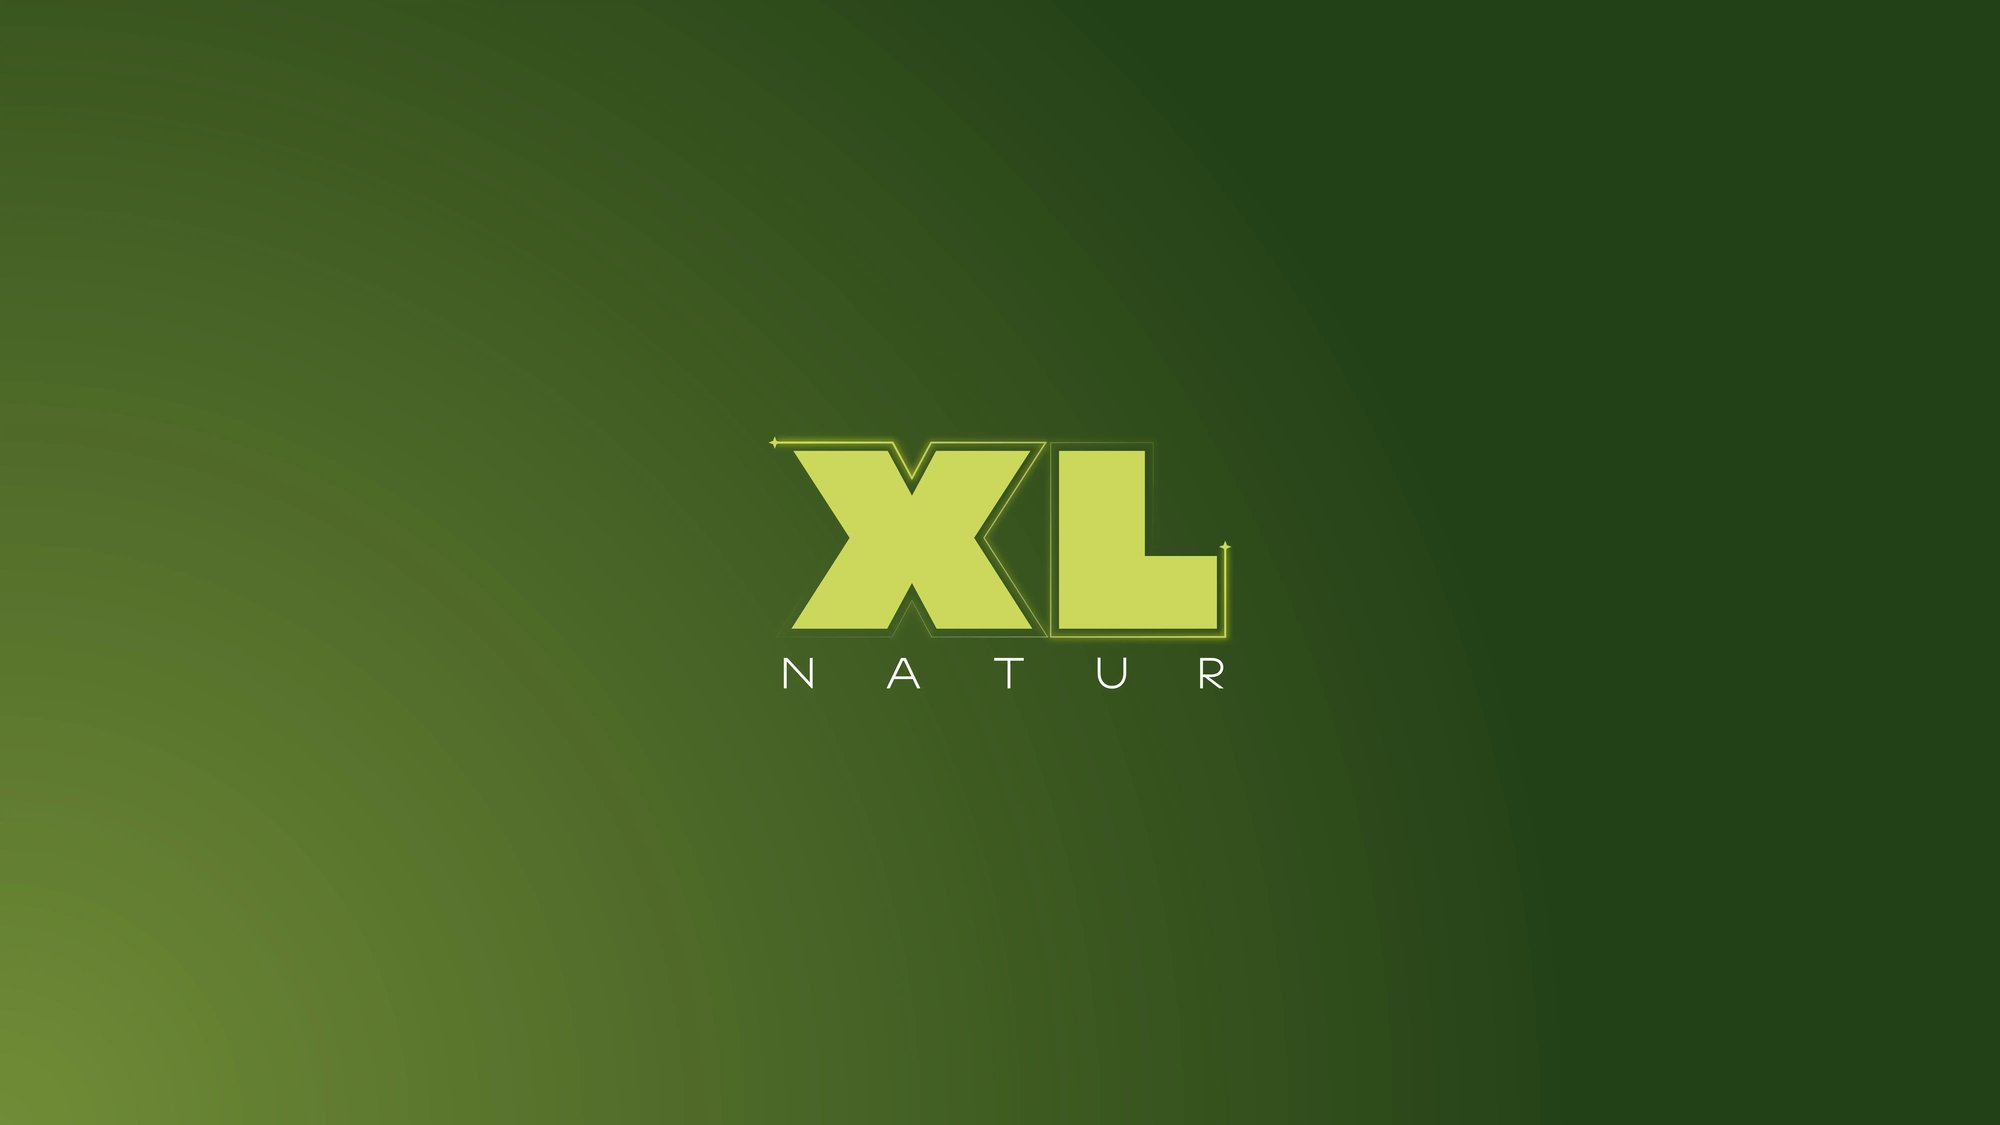 XL Doku Natur Artwork_COLOUR-1